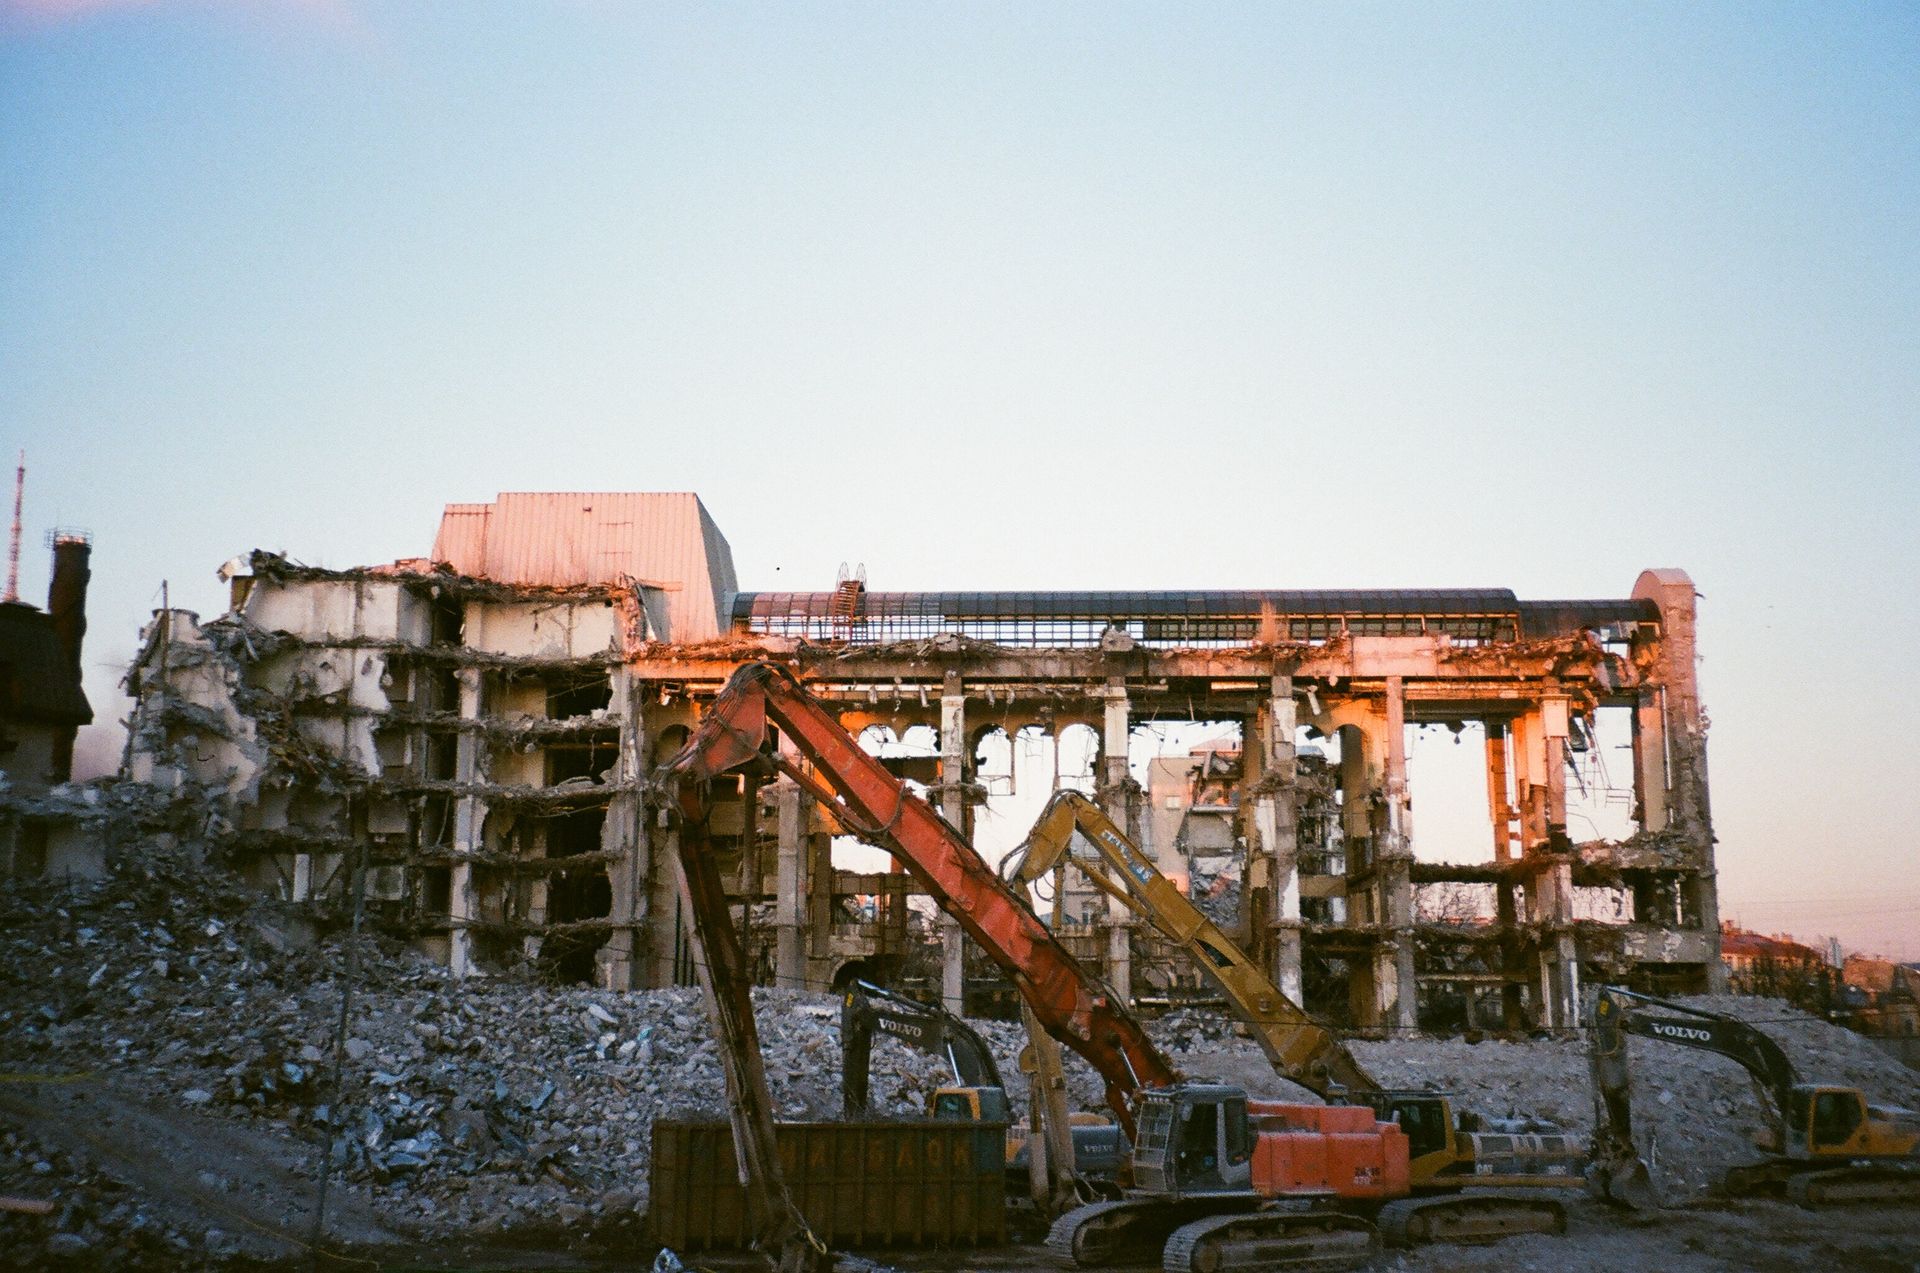 Znany deweloper przemysłowy dostał pozwolenie na wyburzenie 31 budynków w Gdańsku. Kiedy ruszą prace?